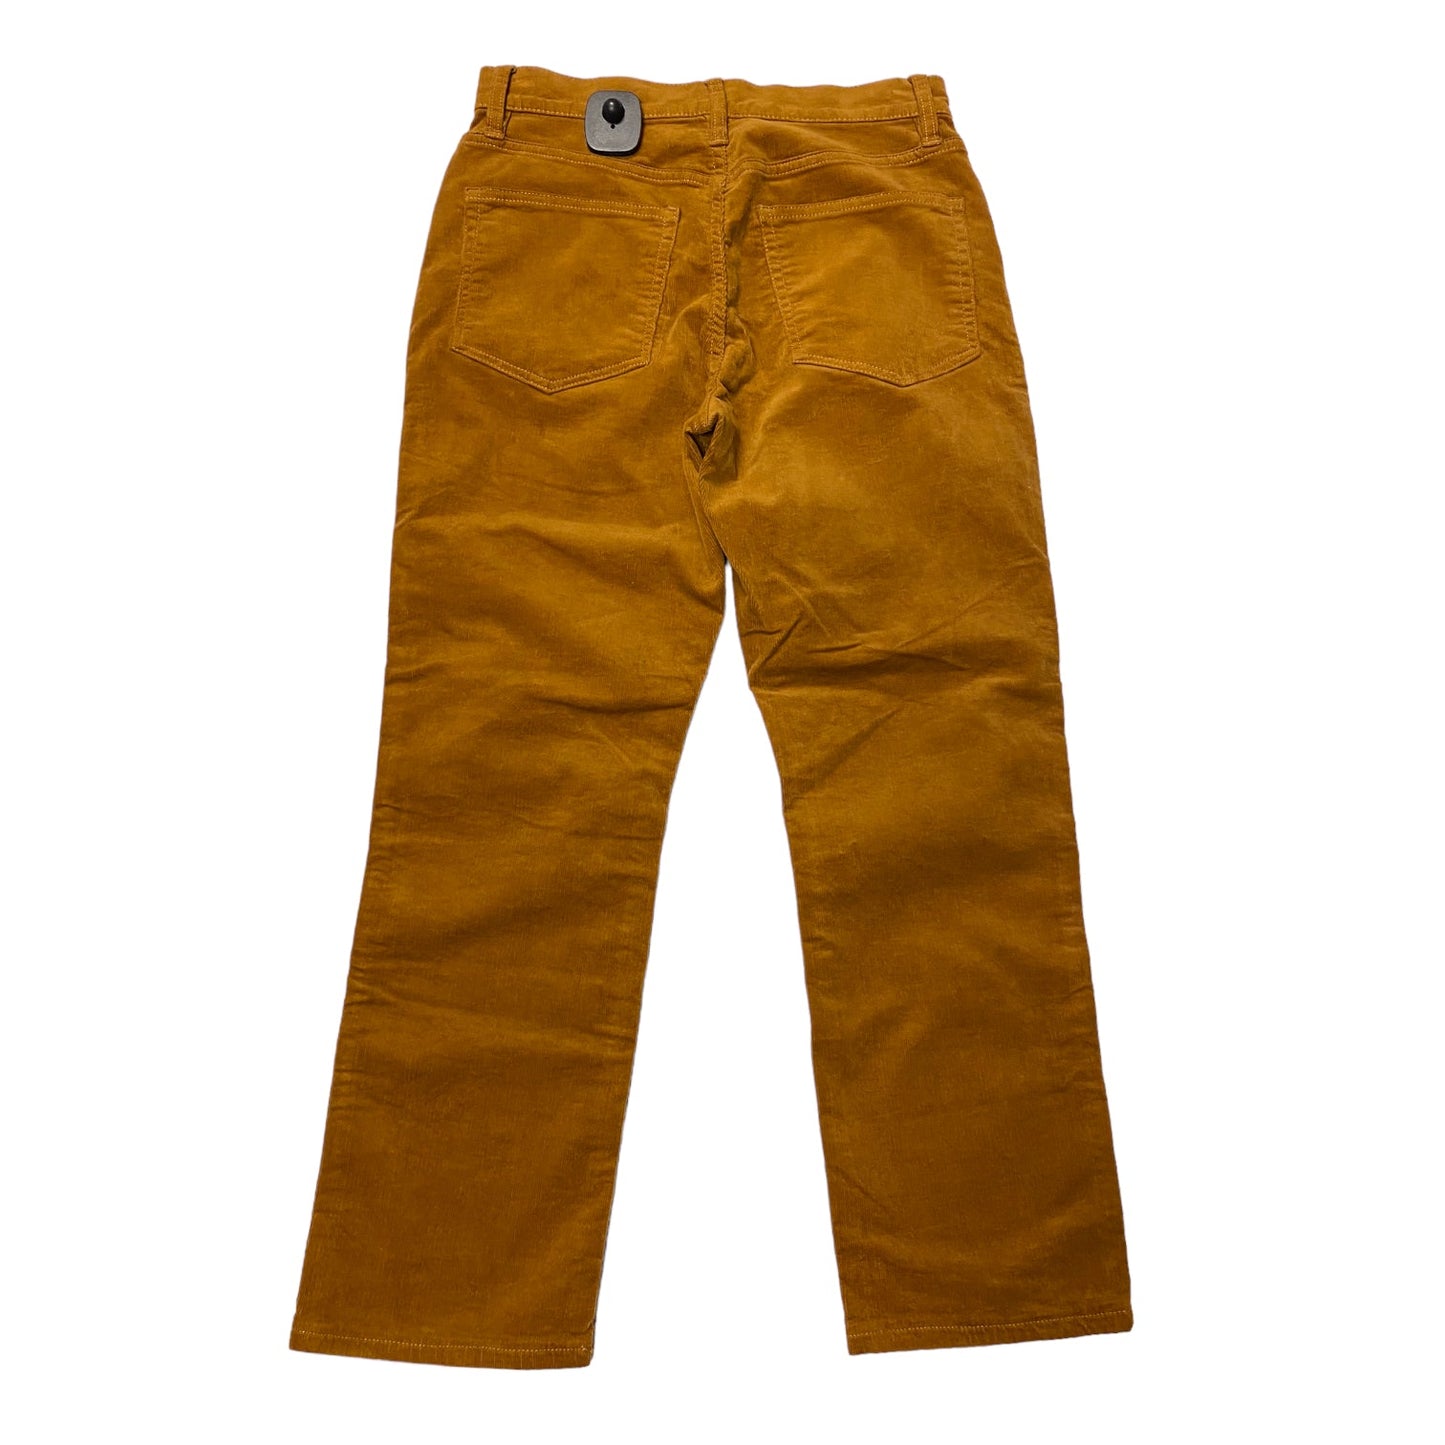 Pants Corduroy By J Crew  Size: 2